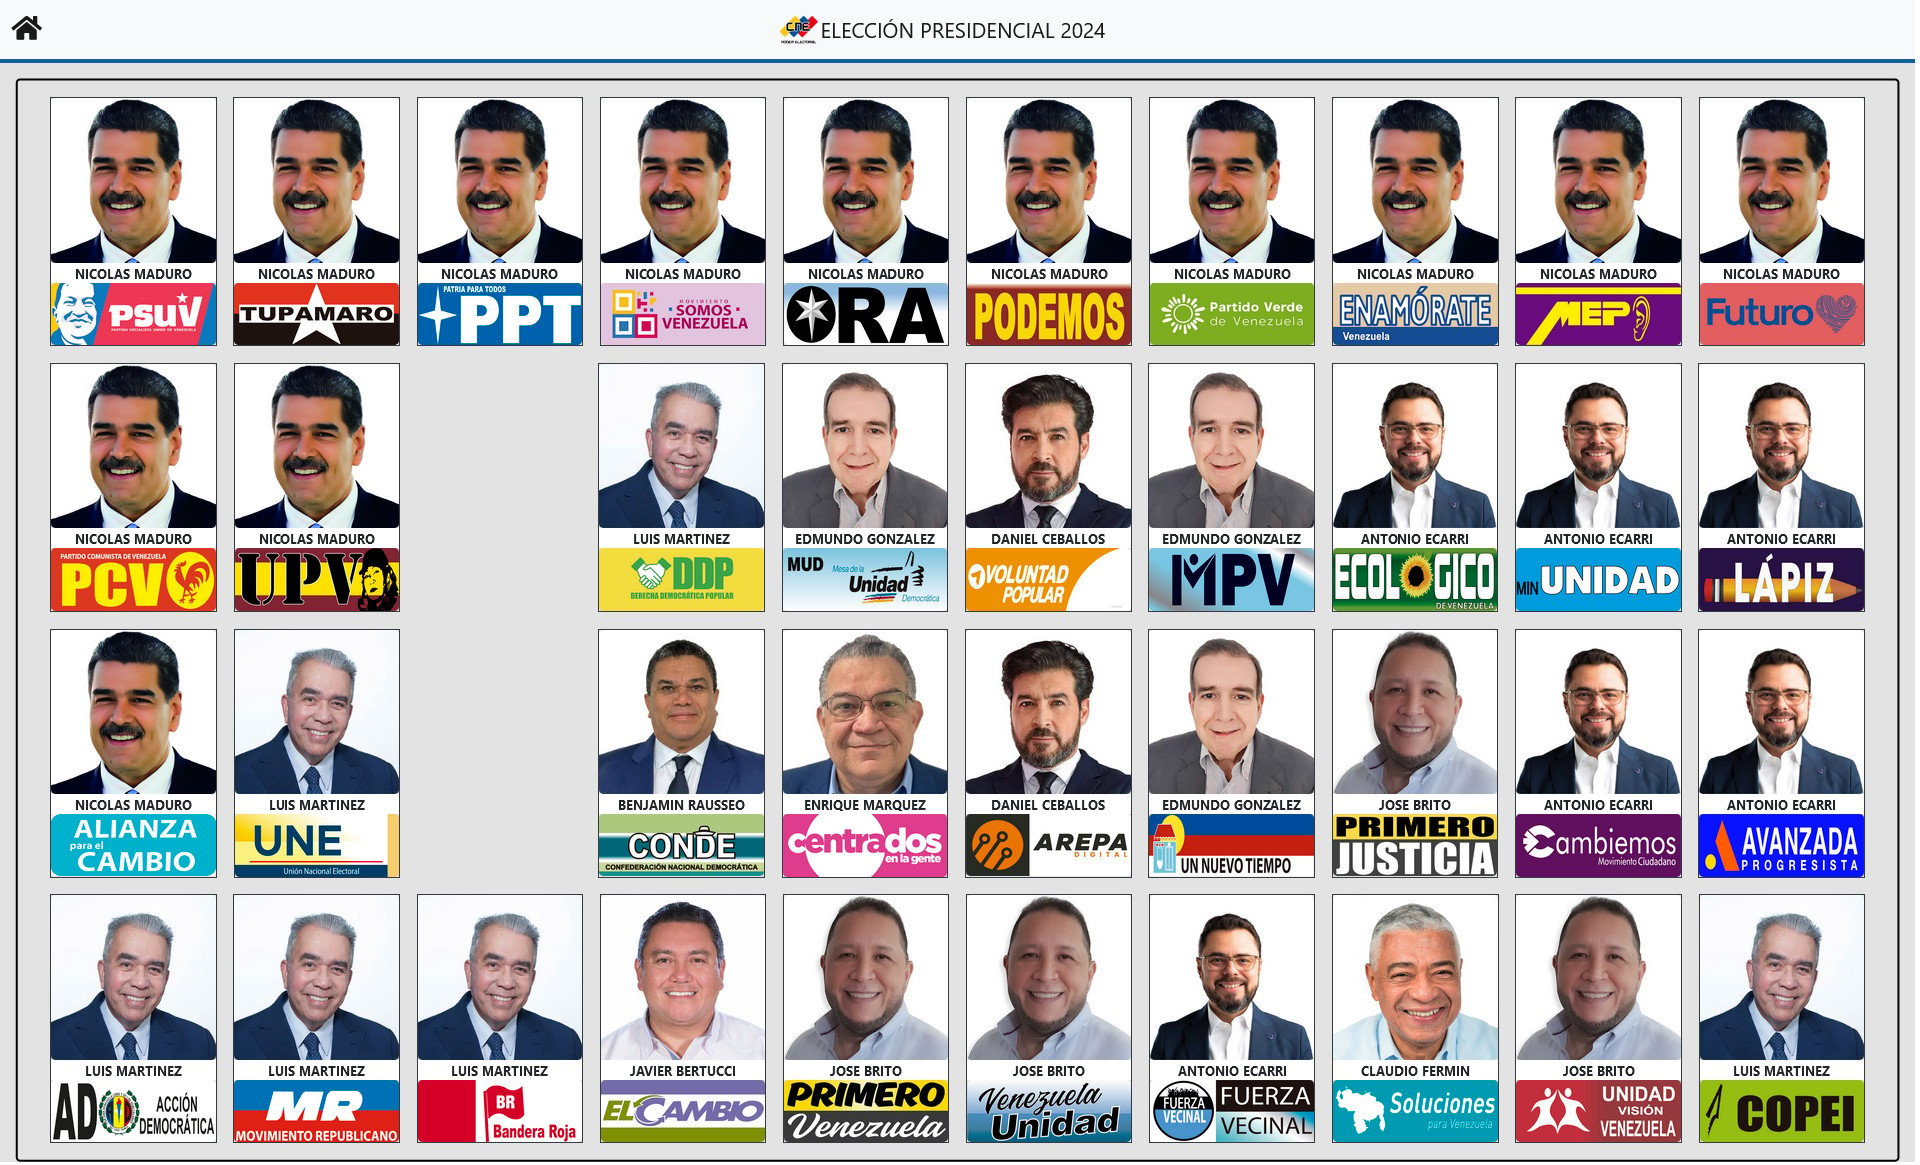 Así será el tarjetón con el que los venezolanos elegirán nuevo presidente para los próximos seis años